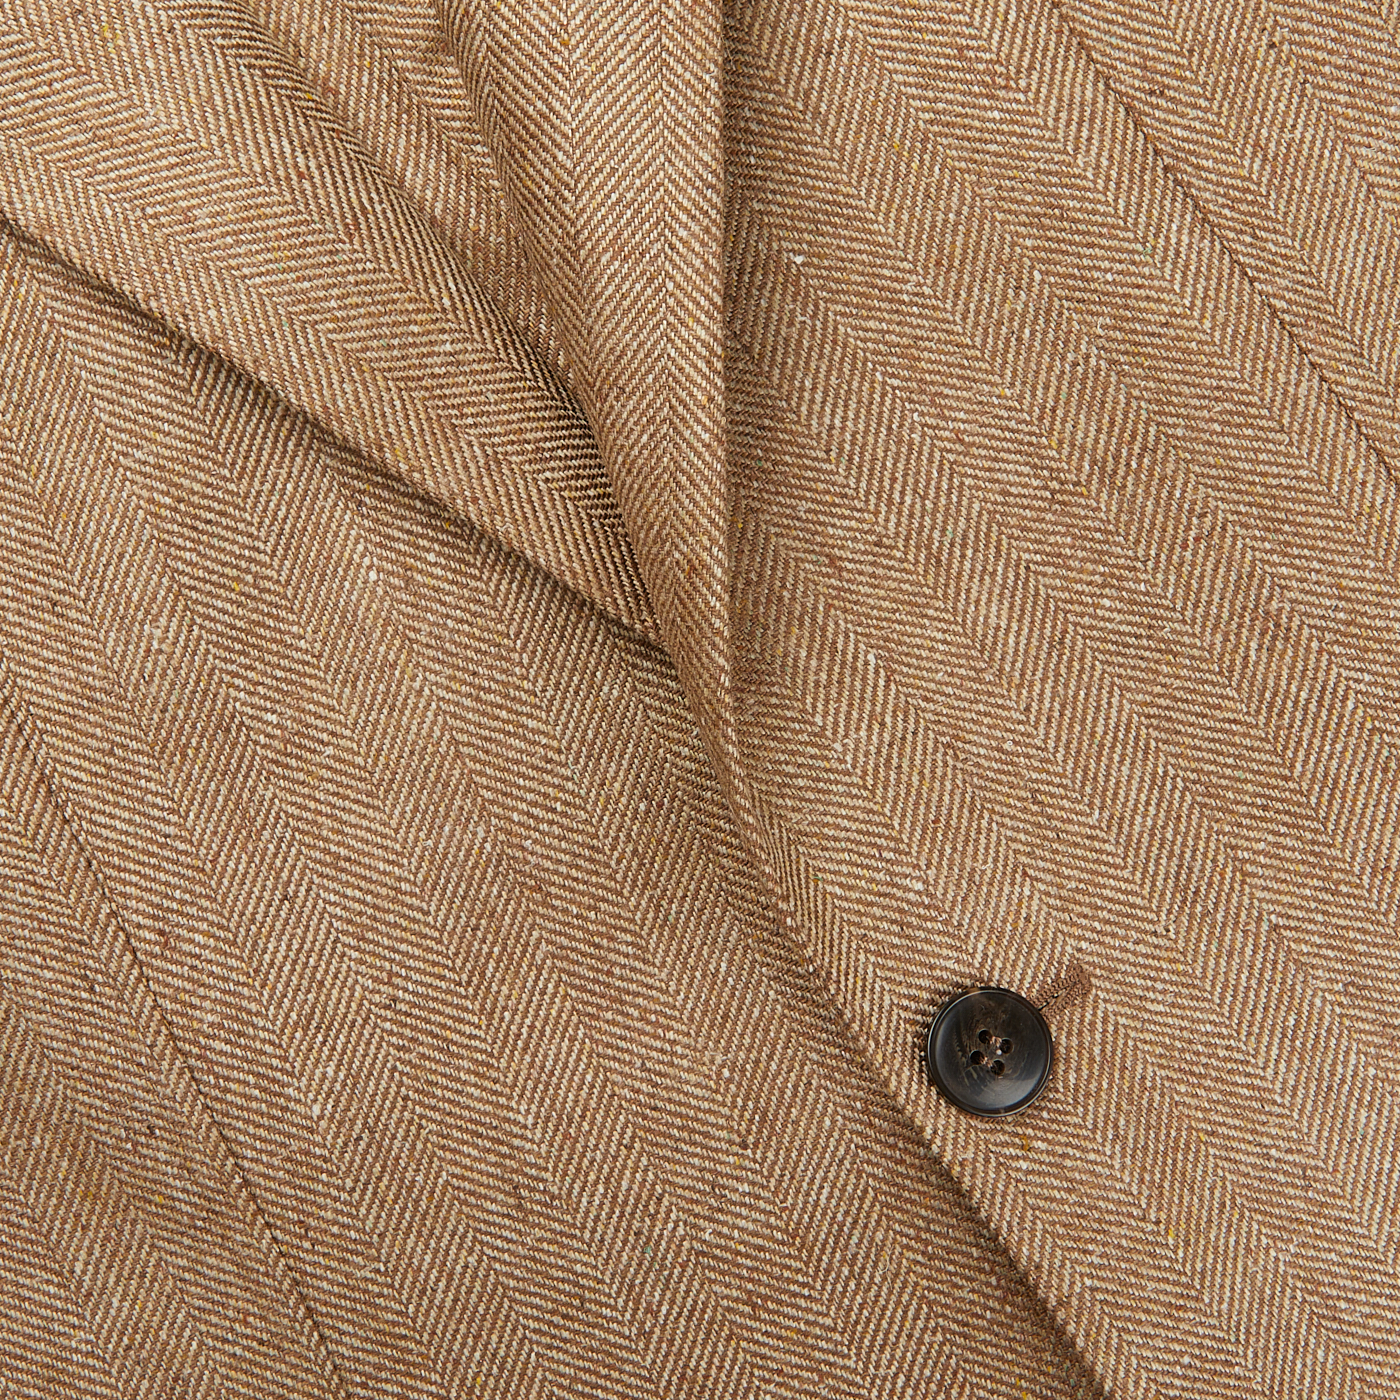 A close up of a Studio 73 Camel Brown Herringbone Pure Silk Blazer.